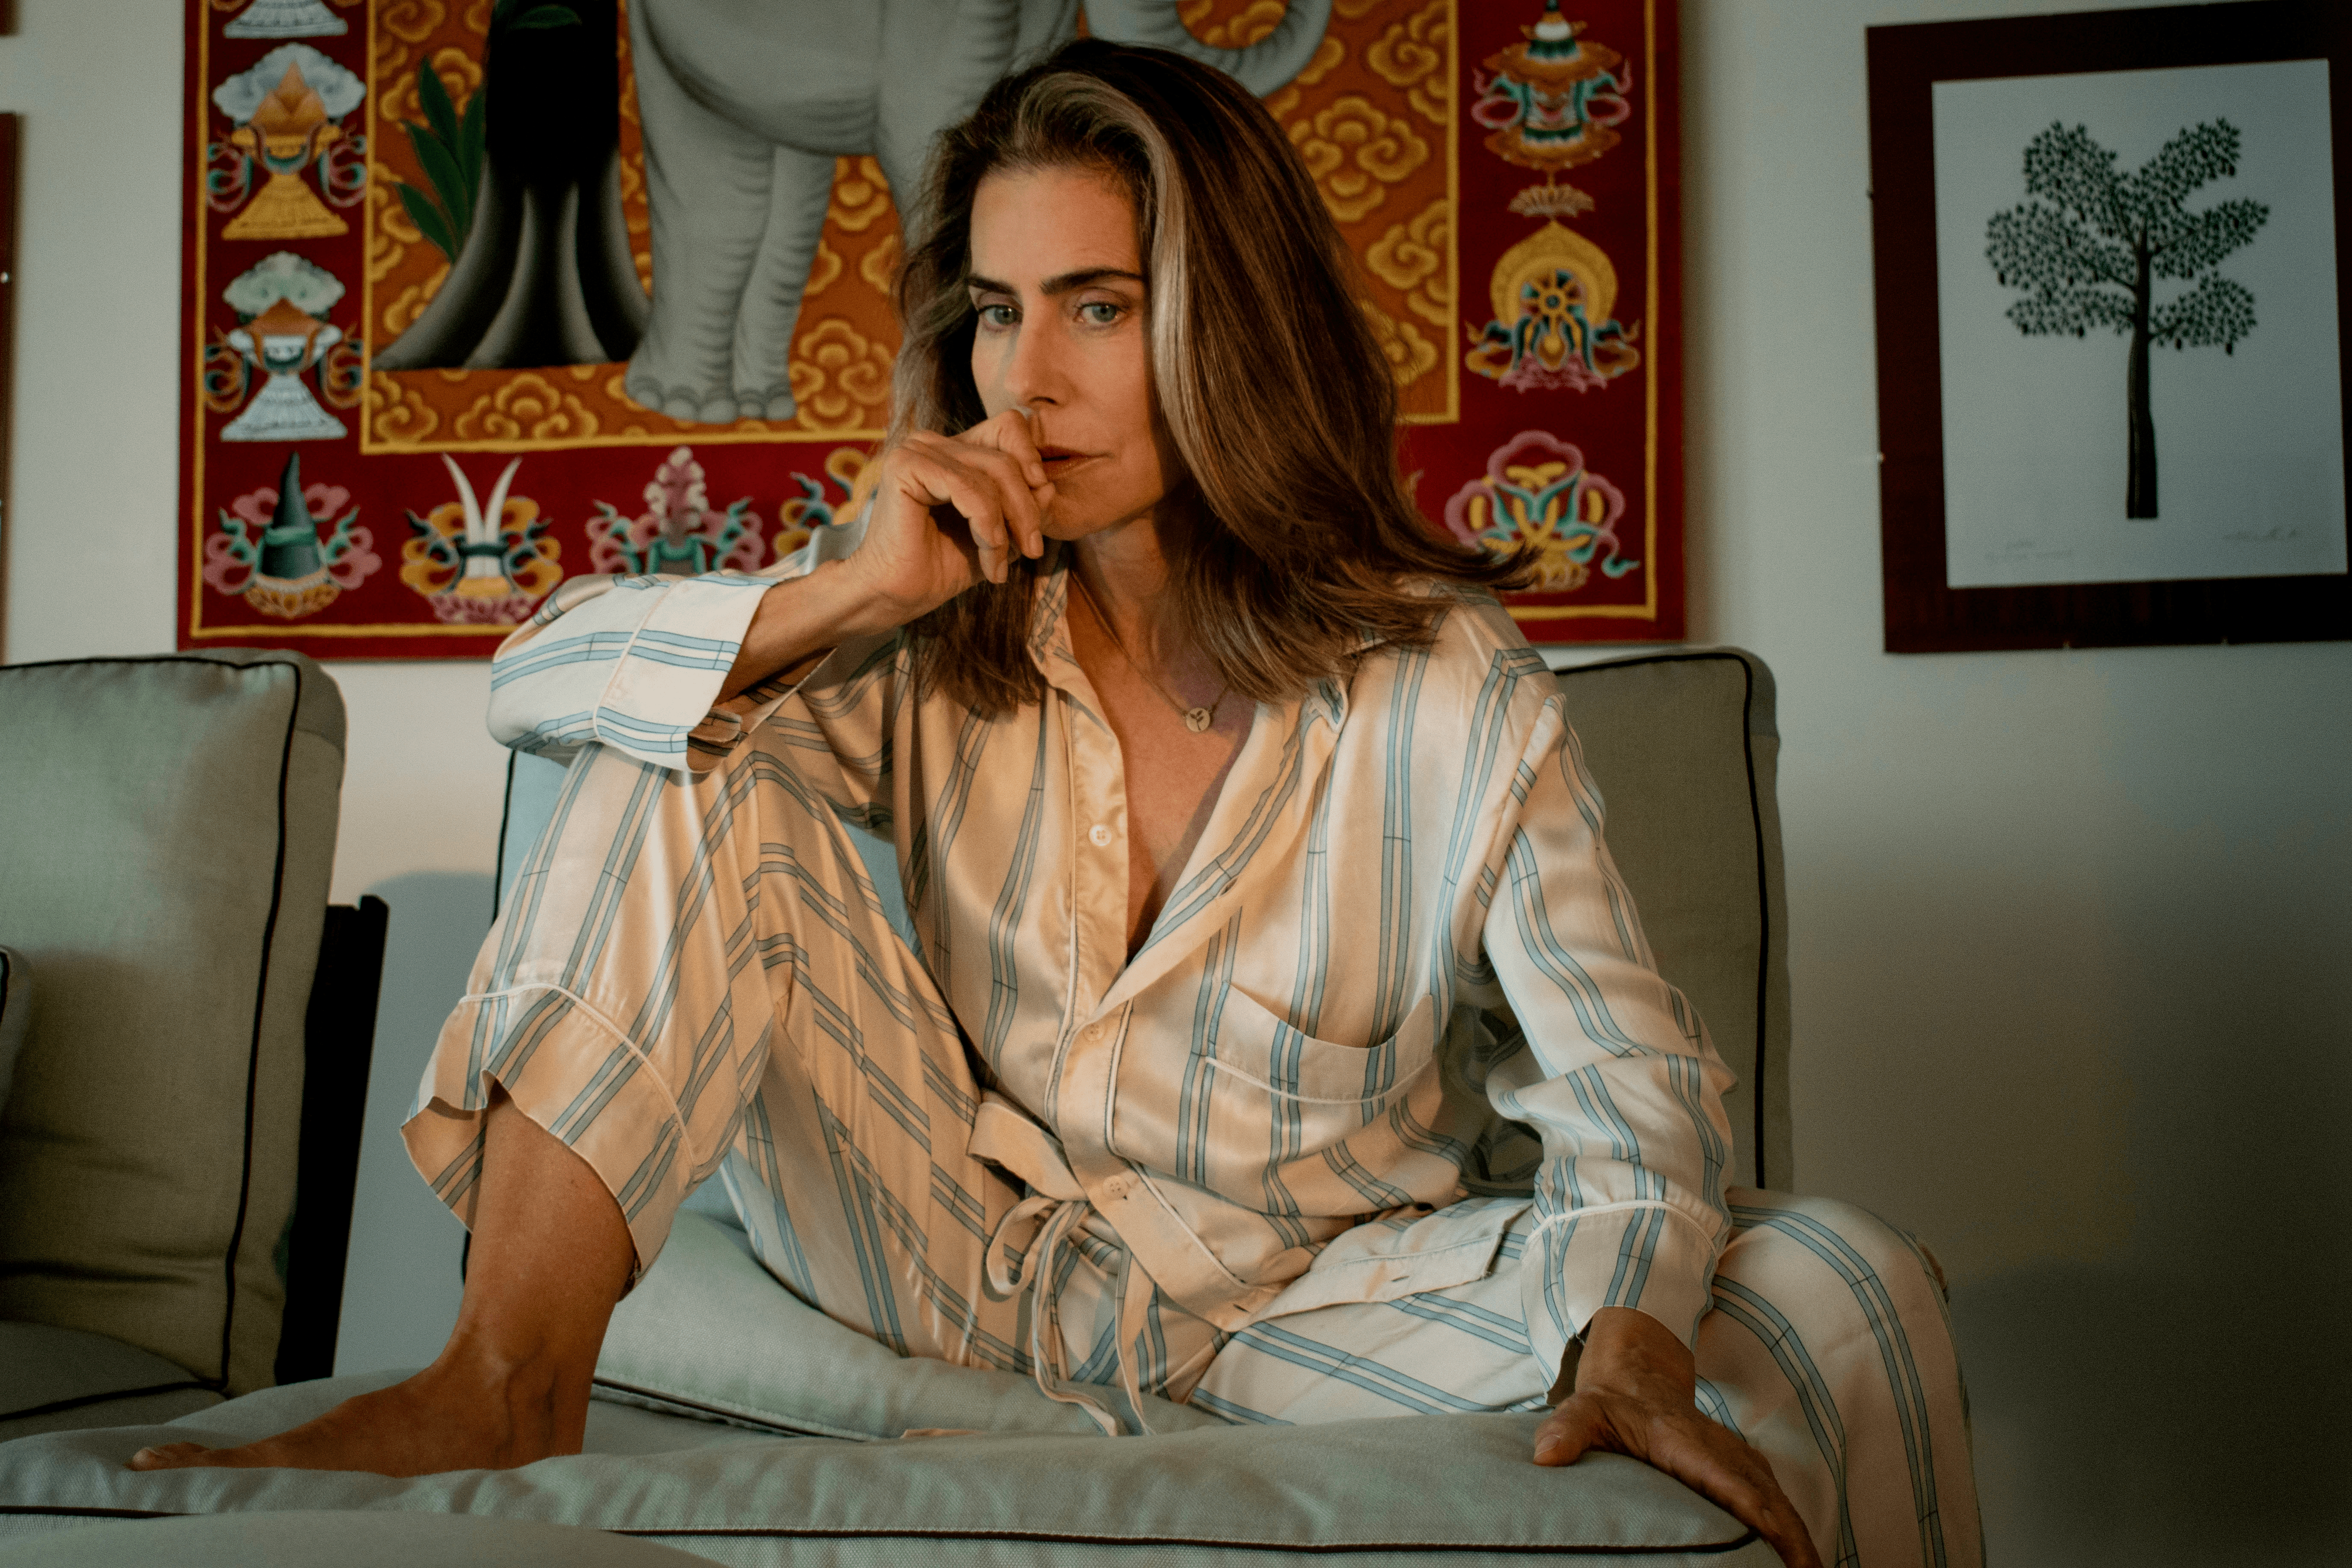 A imagem apresenta a atriz Maitê Proença, uma mulher branca e loira, que veste um pijama branco com listras azuis. Ela está sentada em um sofá cinza e podem-se ver um quadro indiano e um quadro de uma pequena árvore na parede do fundo